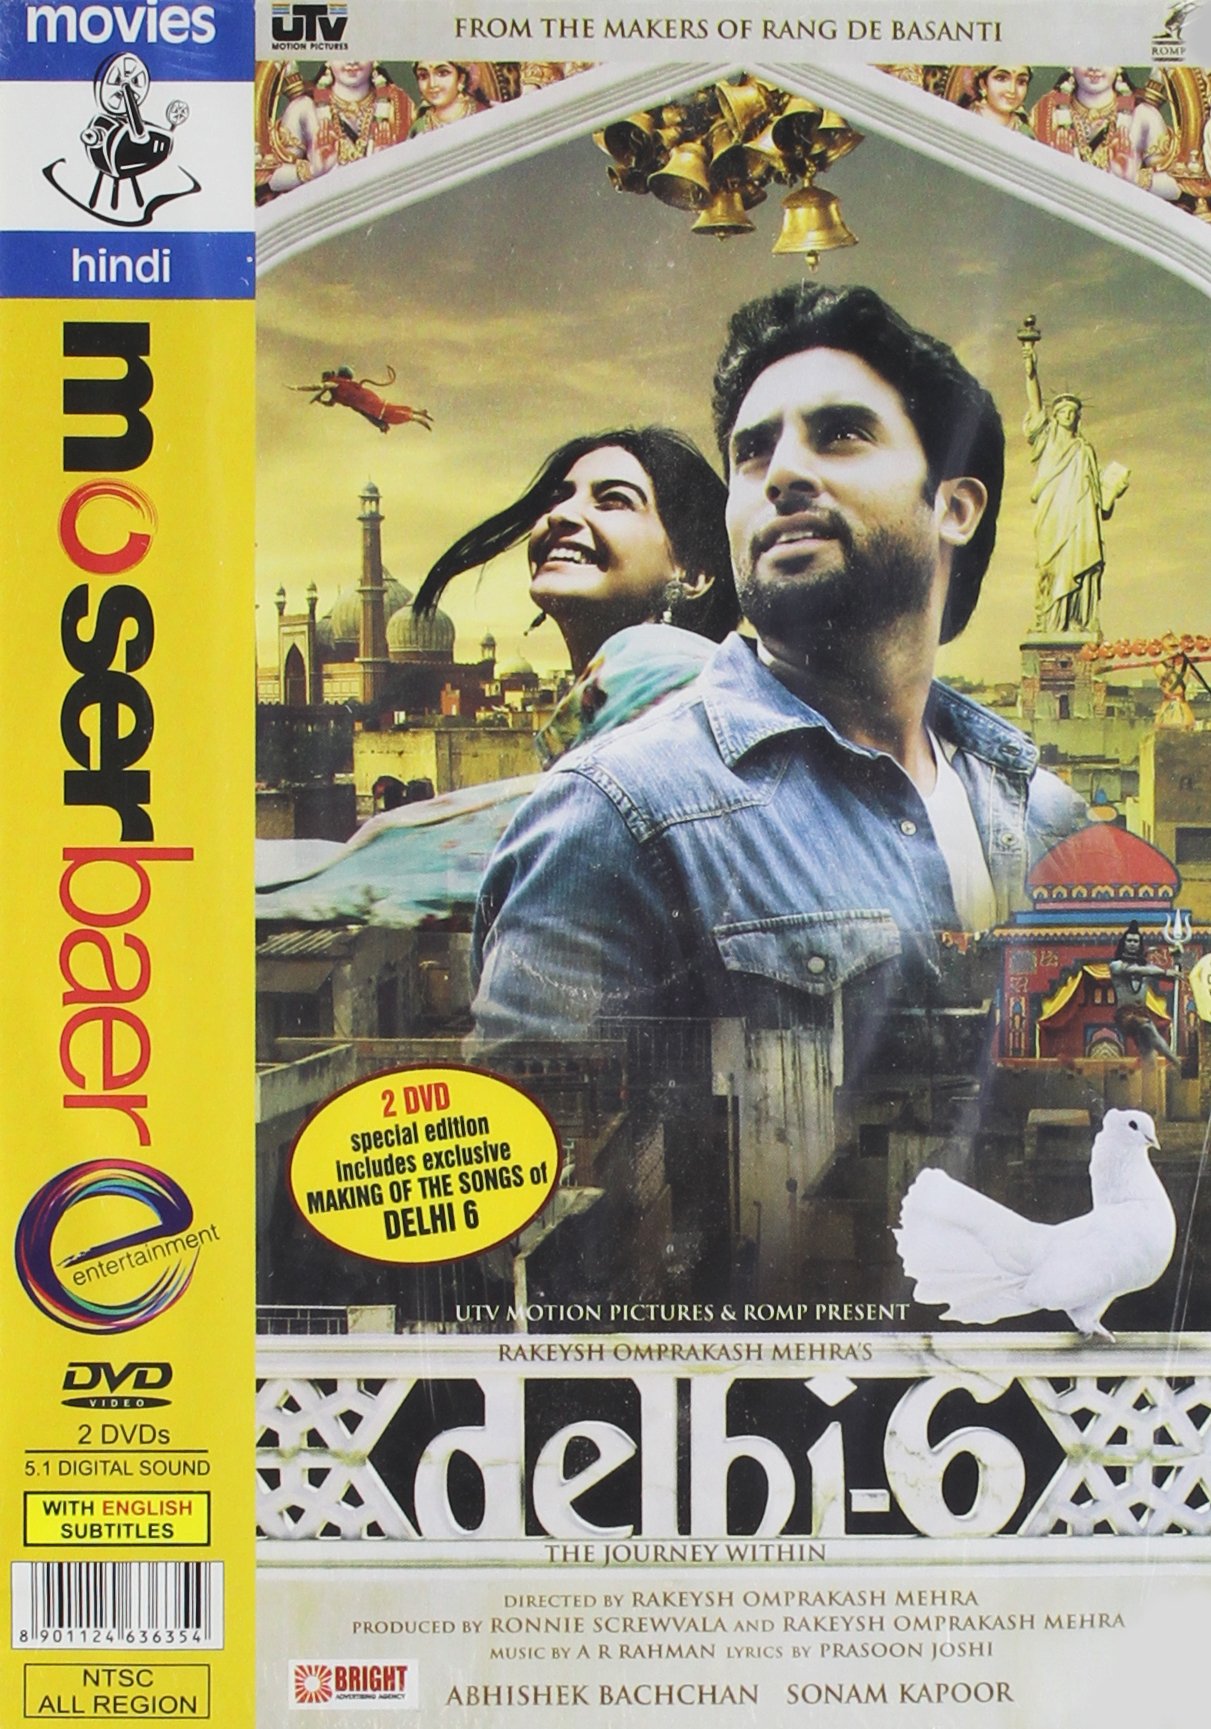 delhi-6-movie-purchase-or-watch-online